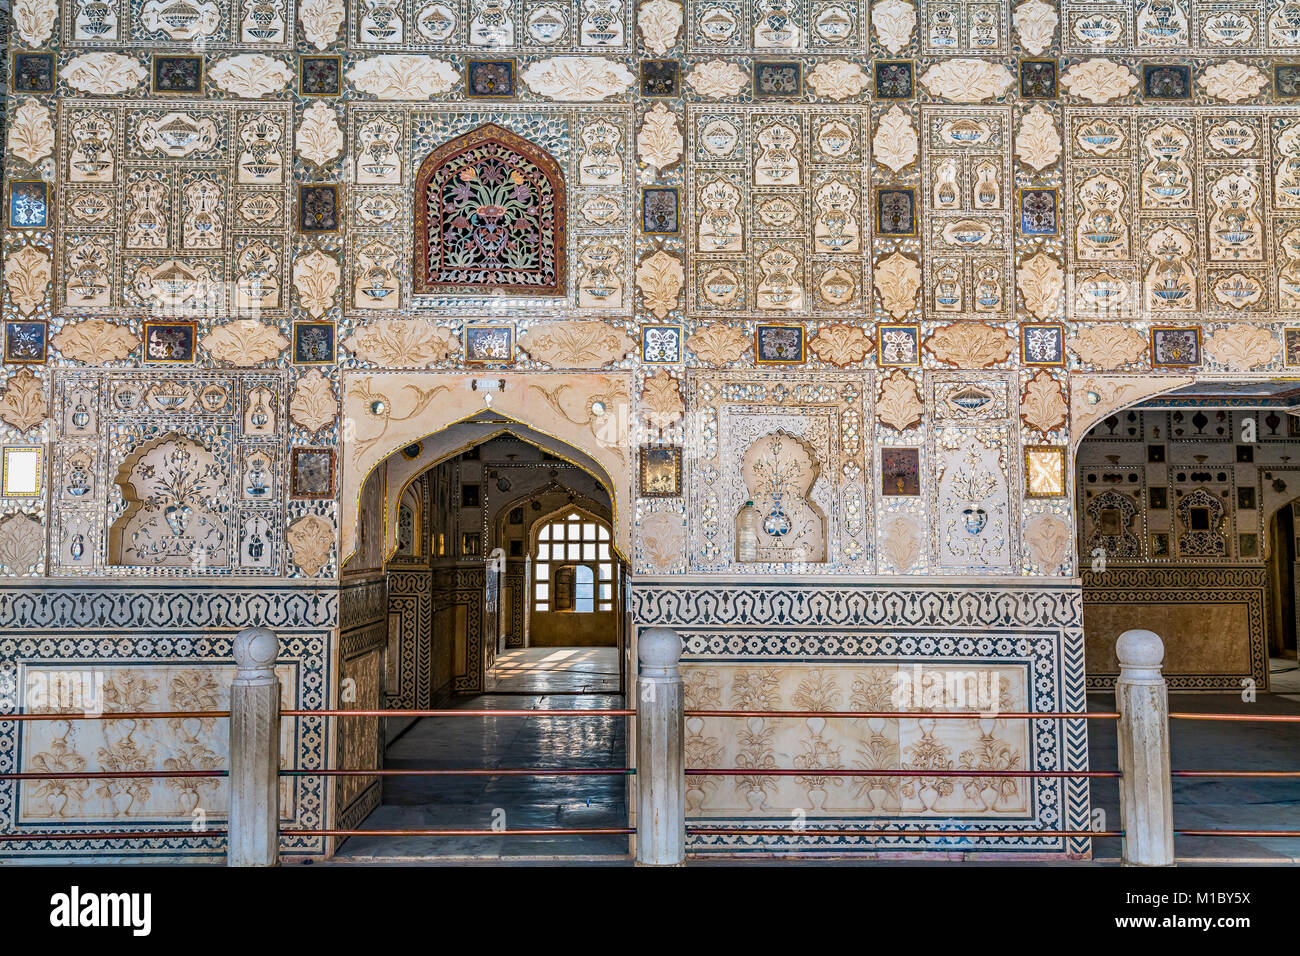 Fort Amber Jaipur vue de Sheesh Mahal - architecture complexe d'art mural avec mosaïque de verres et miroirs. Banque D'Images